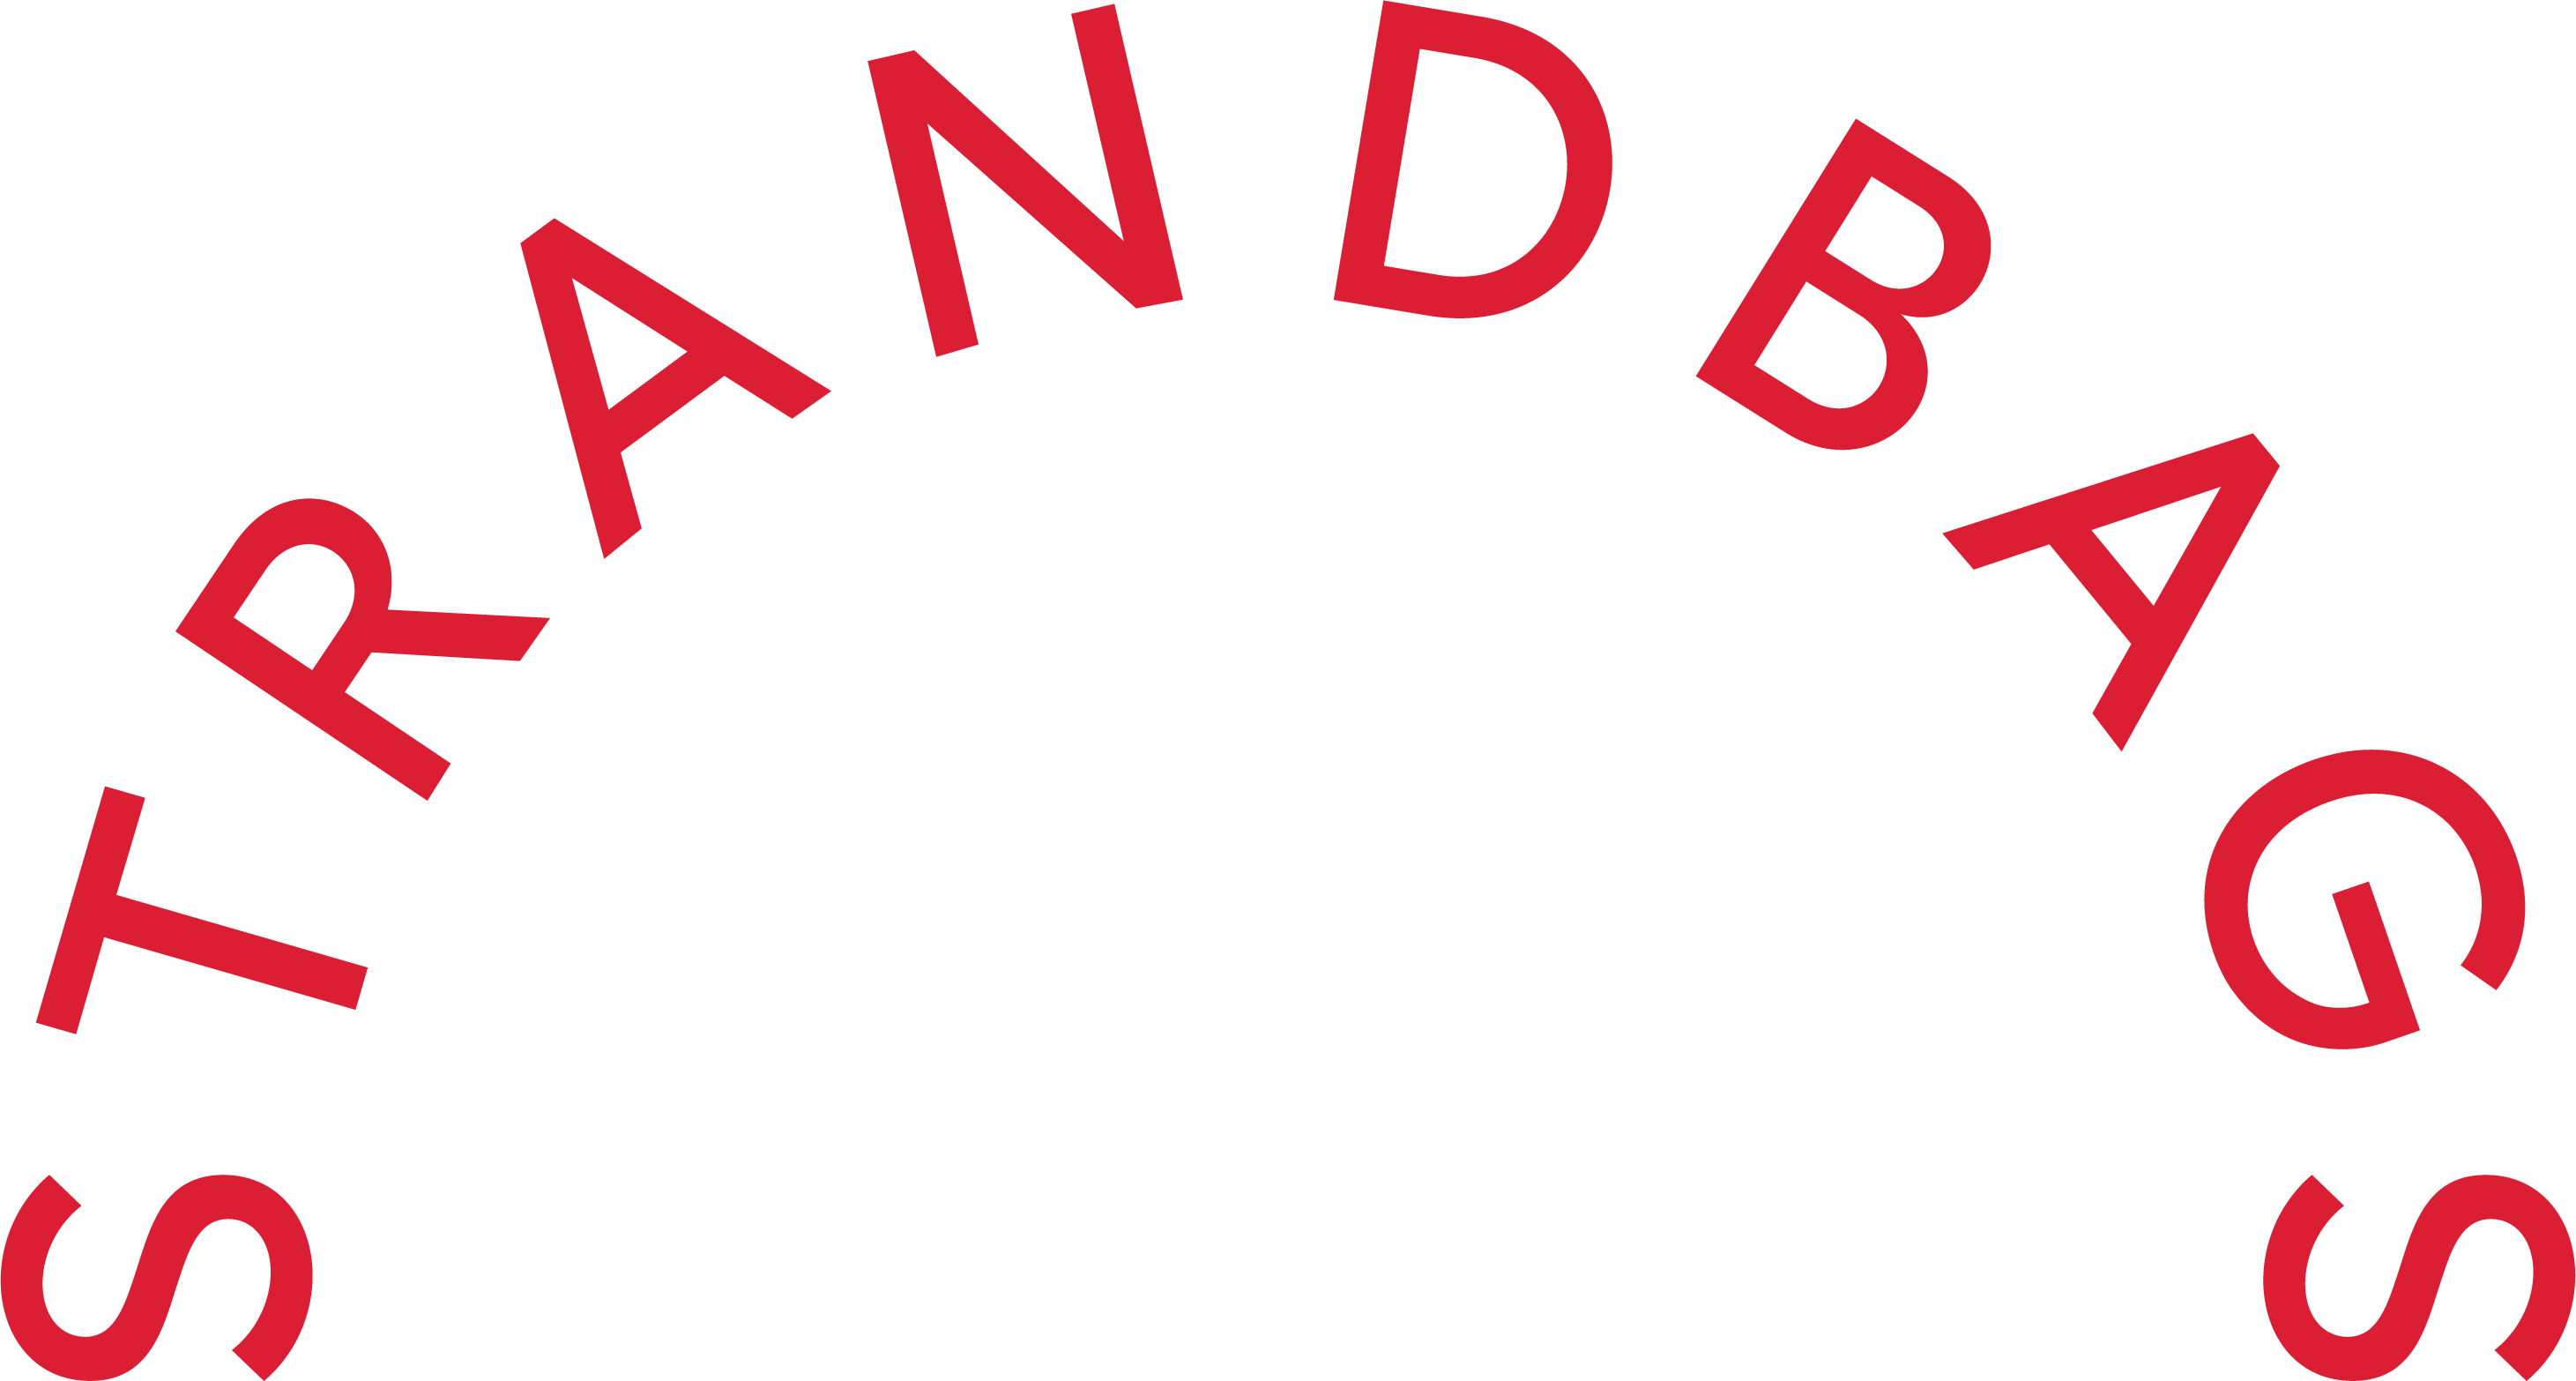 logo_strandbags_b